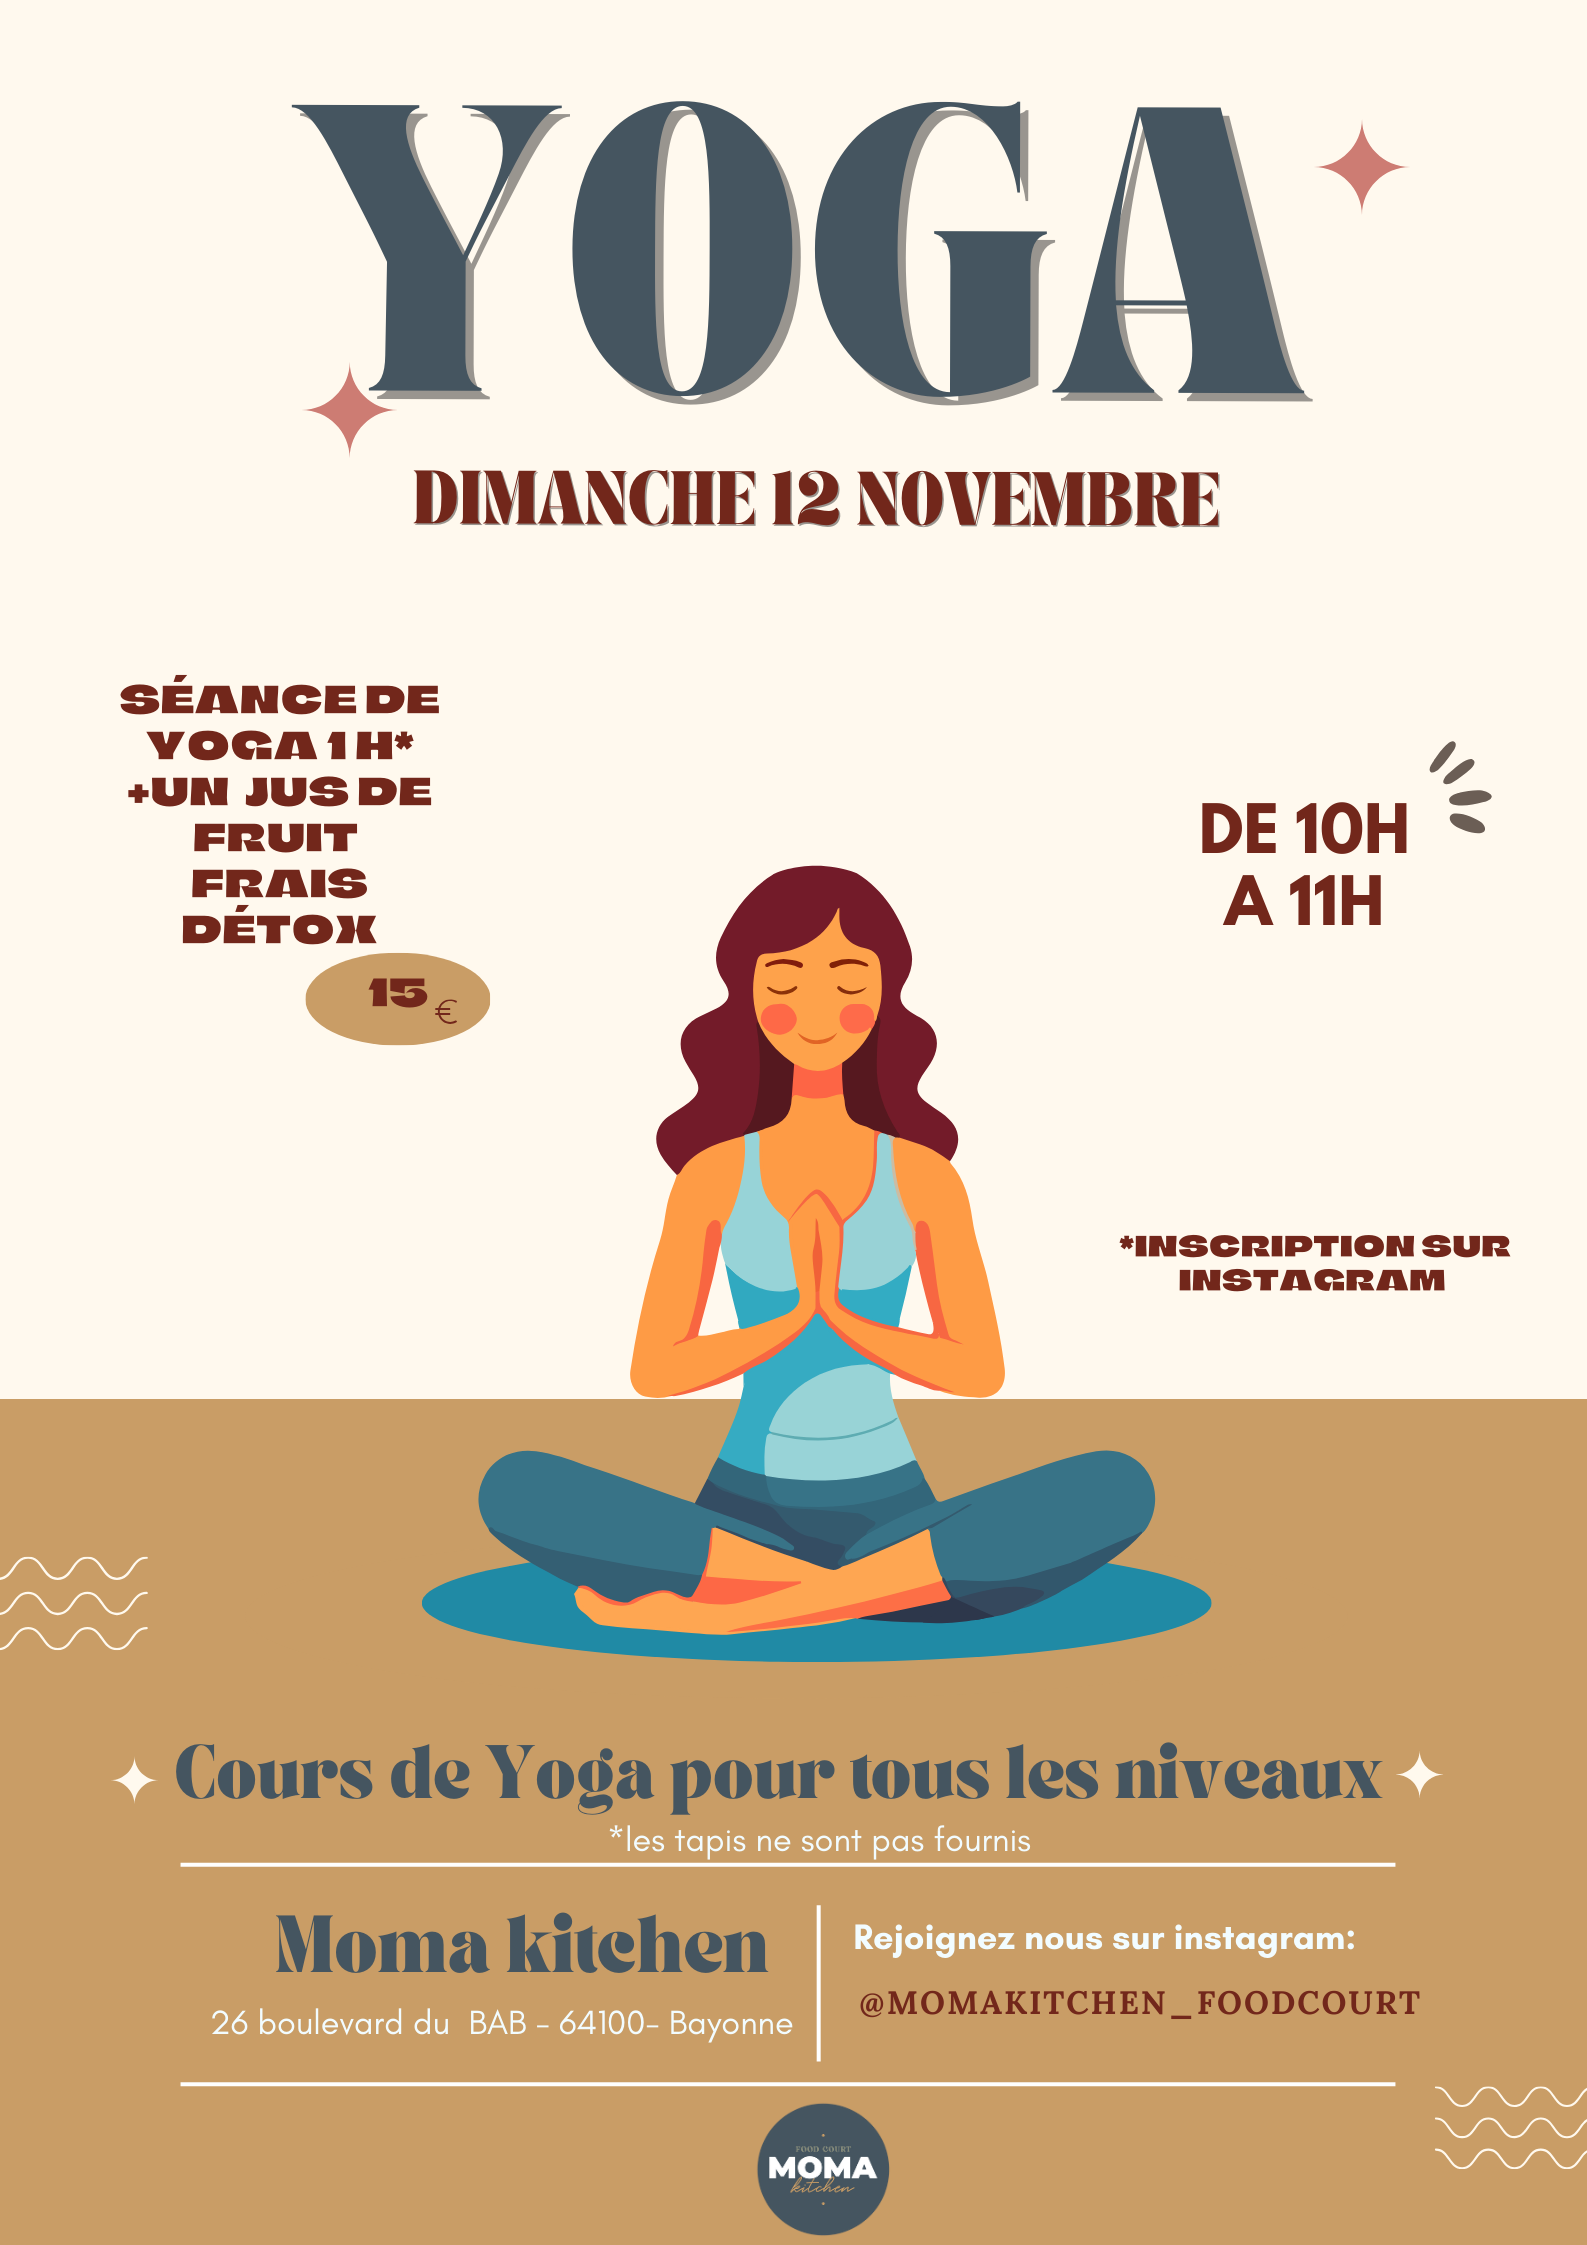 Séance de yoga : Dimanche 12 novembre